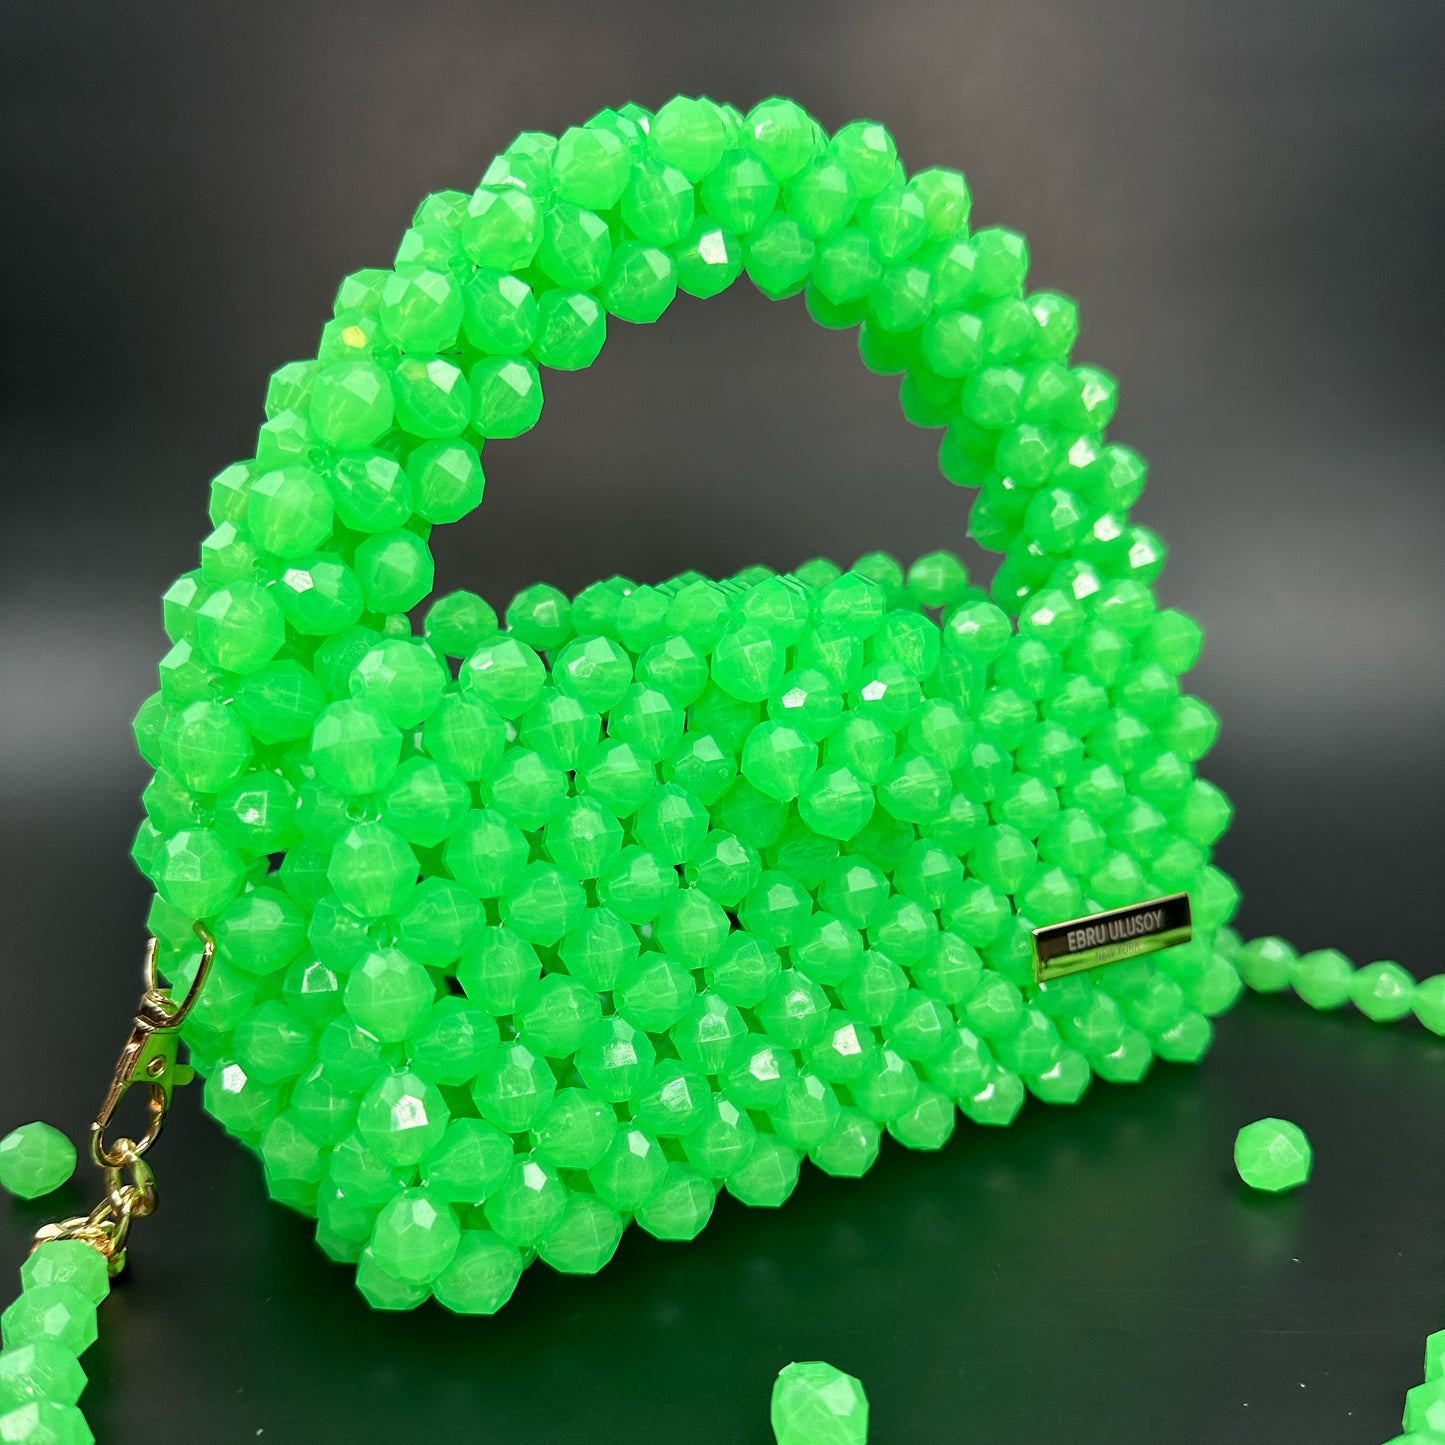 Glowing Green Bead Bag